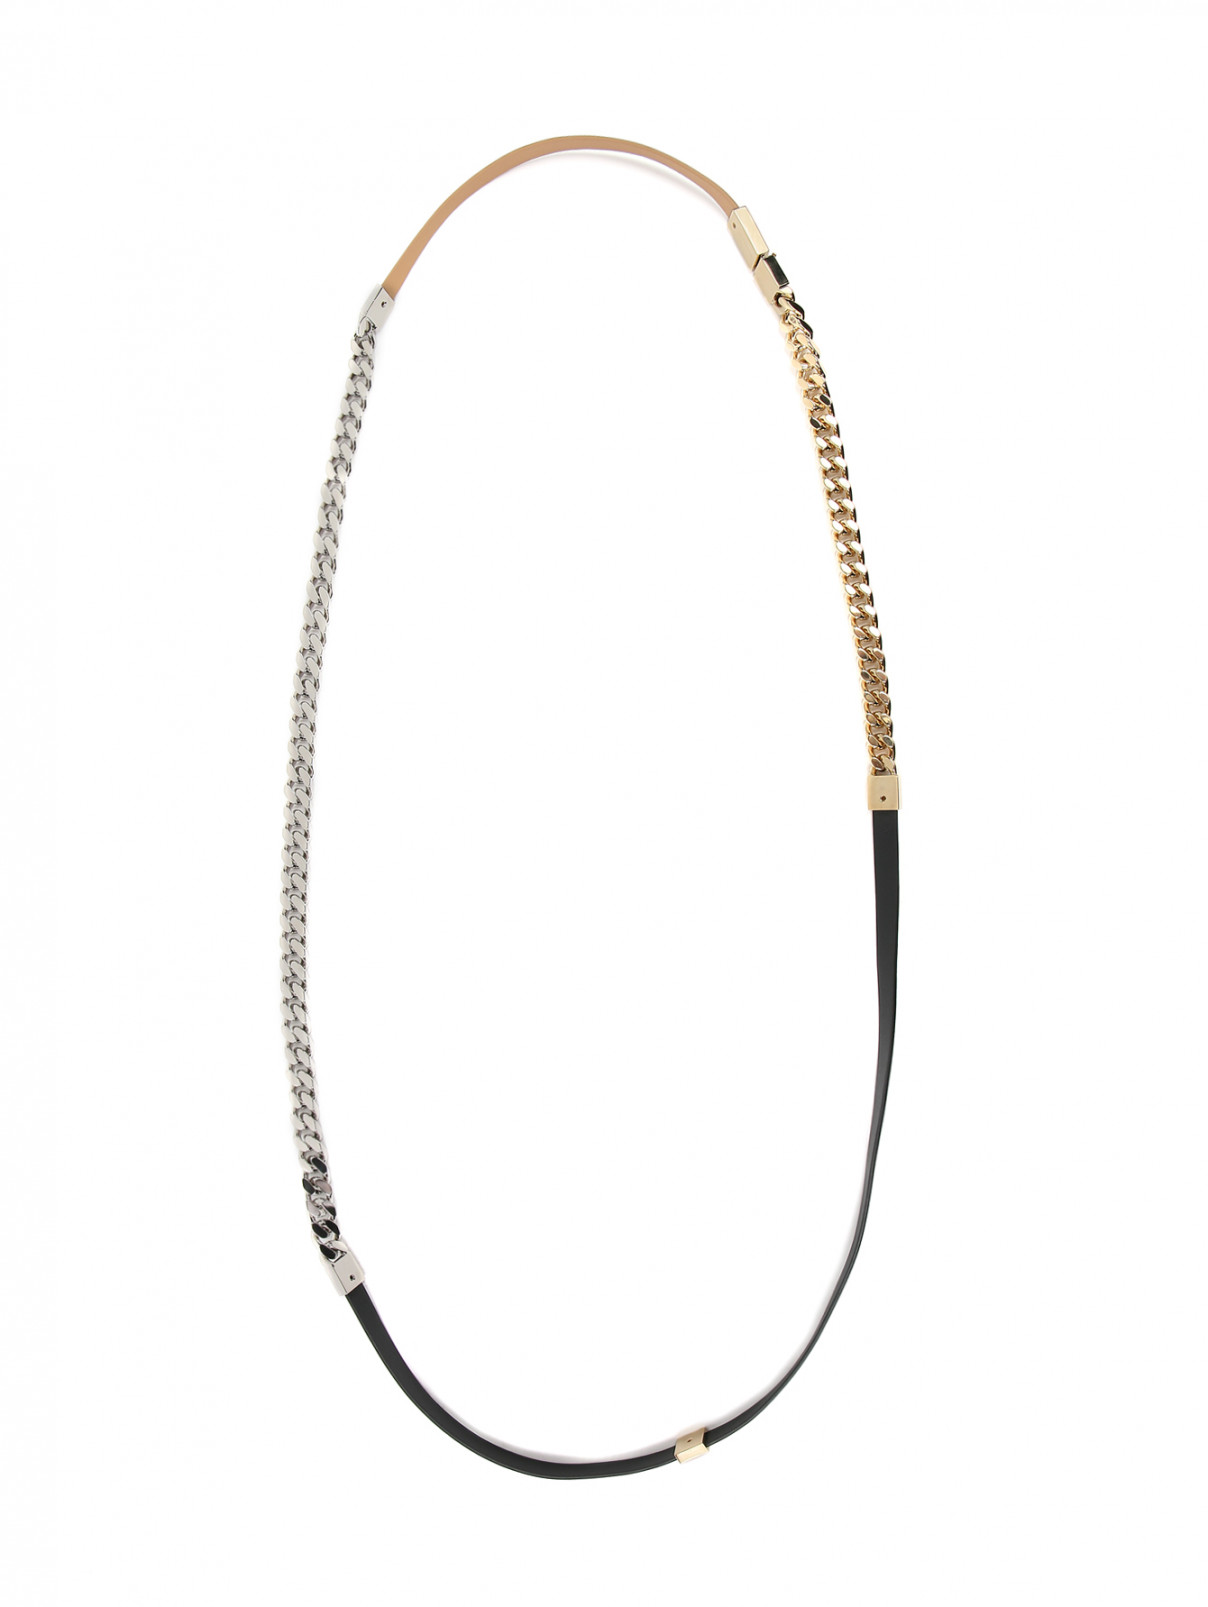 Двойное ожерелье из кожи и металла Jil Sander  –  Общий вид  – Цвет:  Мультиколор